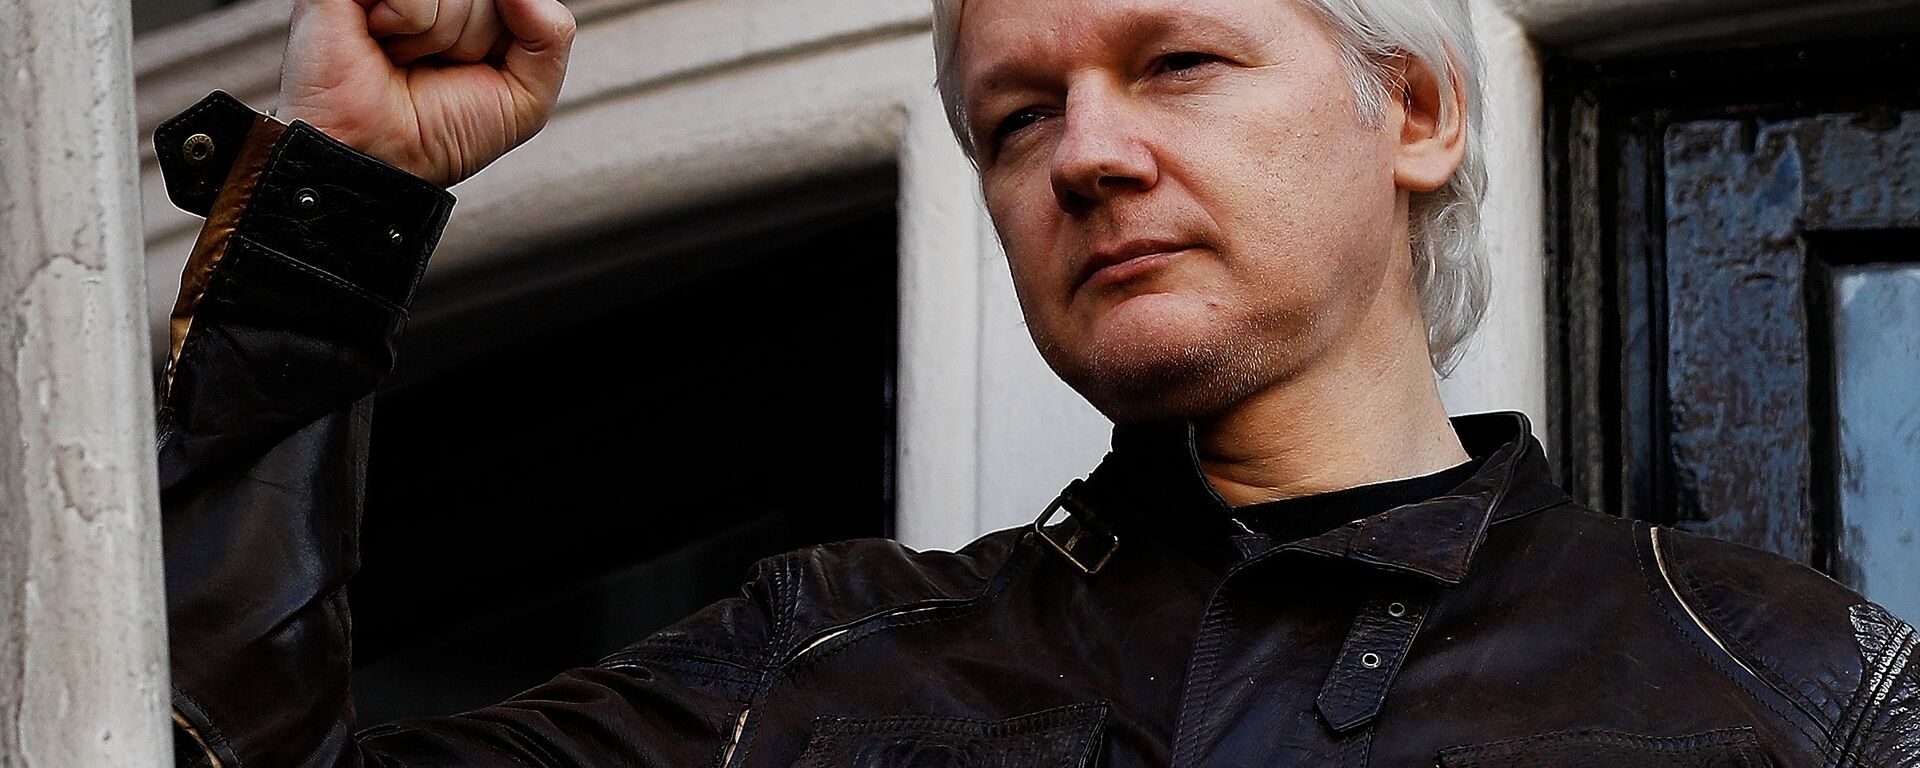 WikiLeaks founder Julian Assange is seen on the balcony of the Ecuadorian Embassy in London, Britain, May 19, 2017 - Sputnik International, 1920, 29.06.2021